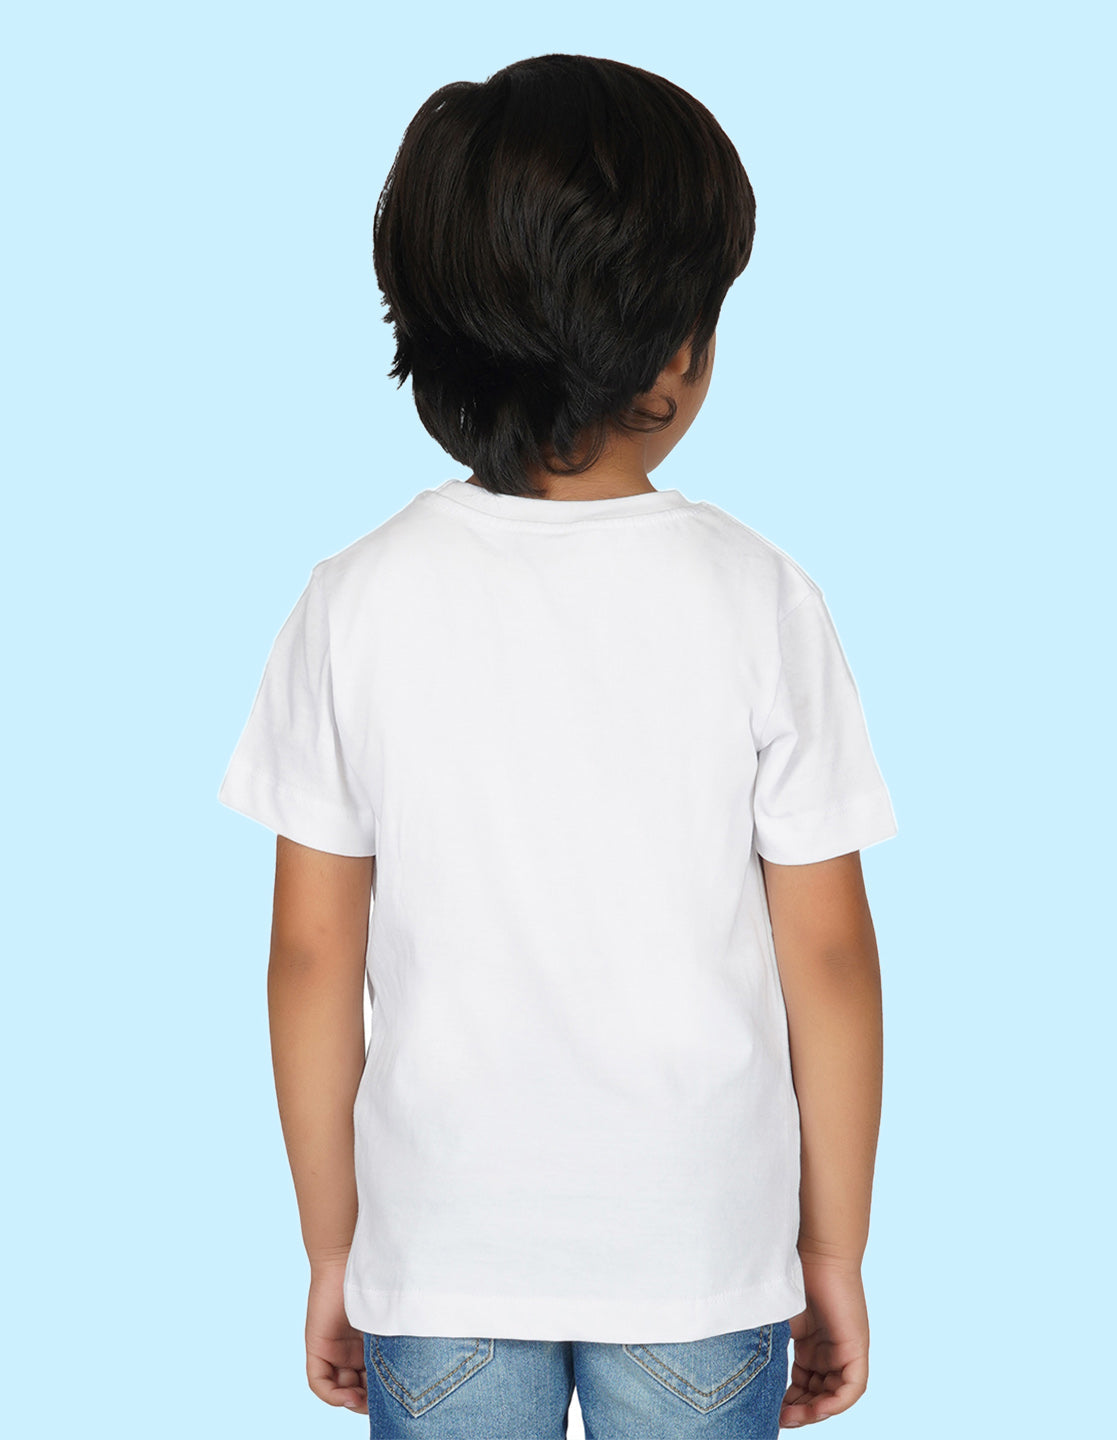 Nusyl Boys White Mood Printed t-shirt